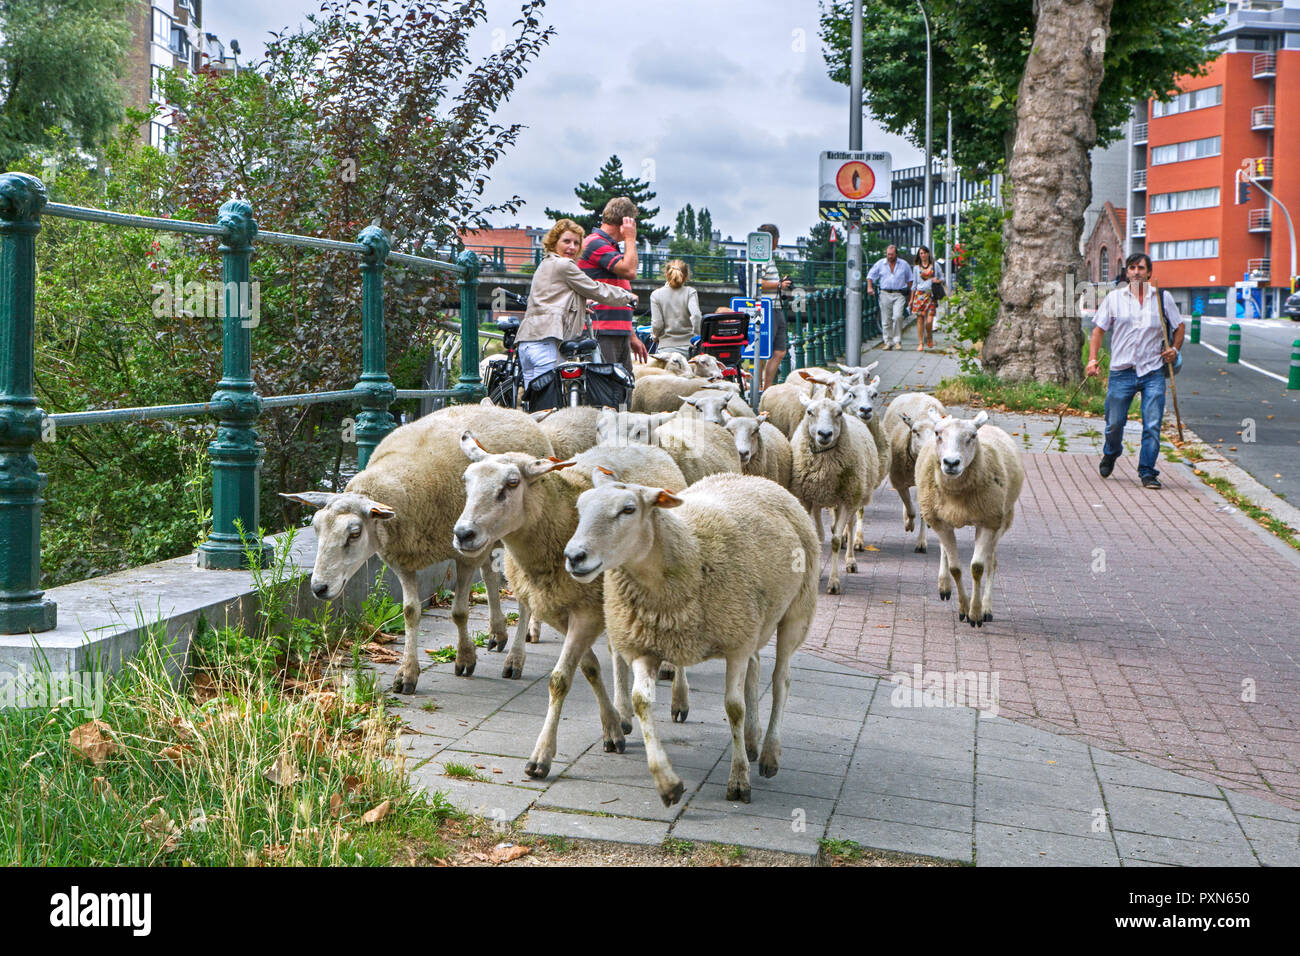 Shepherd herding Herde Schafe im Sommer entlang der Straße grasen Gras von steilen Kanal Banken in der Stadt Gent/Gent, Flandern, Belgien Stockfoto